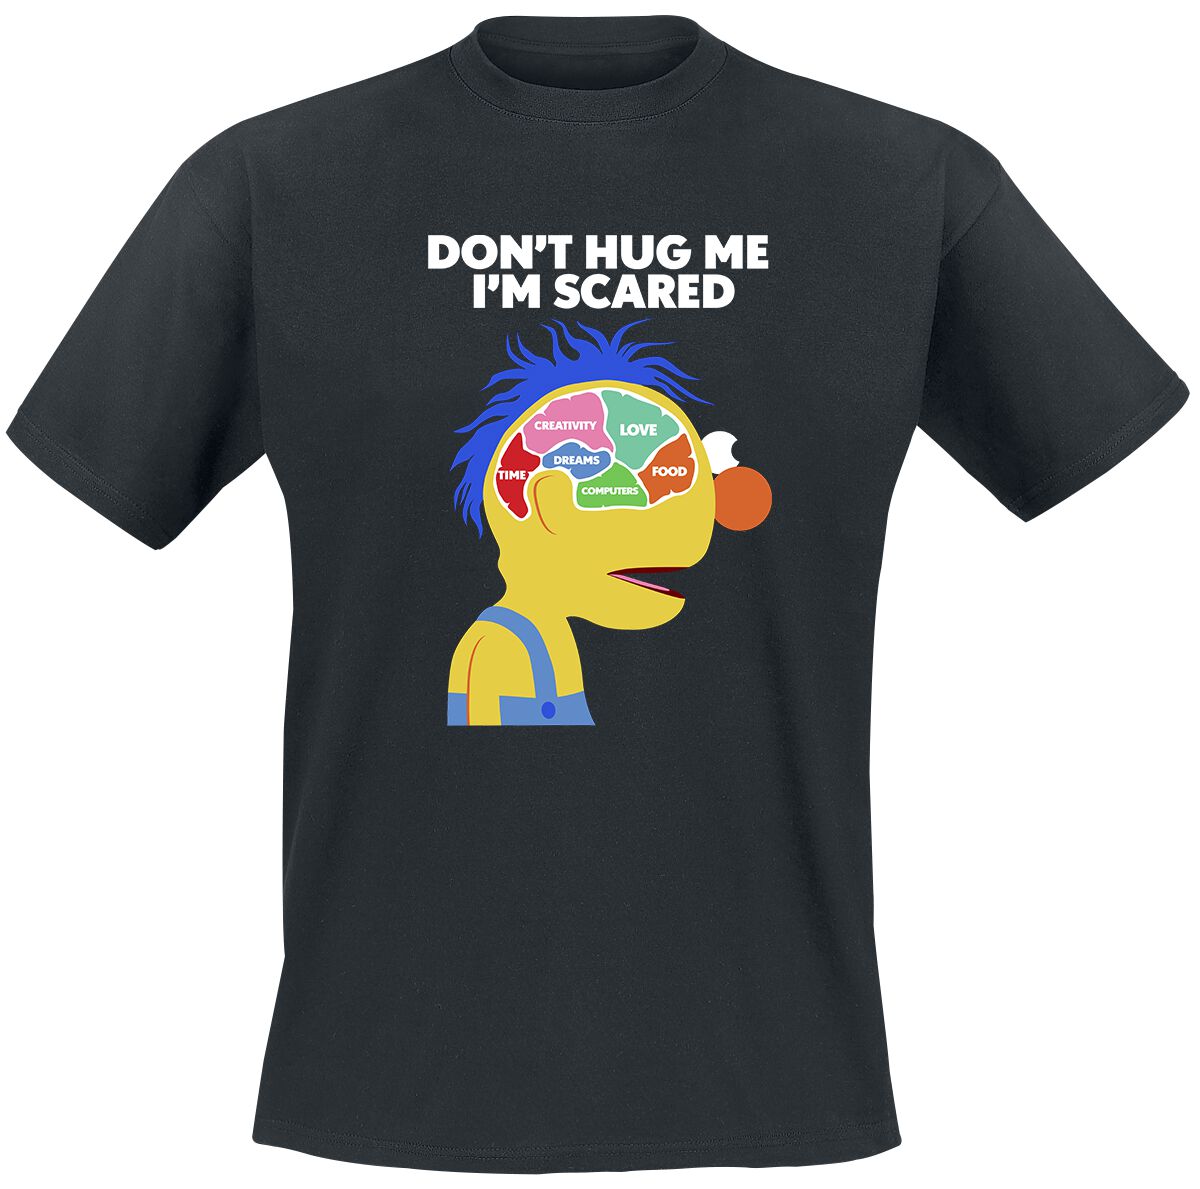 Don't Hug Me I'm Scared T-Shirt - Brain - S bis XL - für Männer - Größe S - schwarz  - Lizenzierter Fanartikel von Don't Hug Me I'm Scared